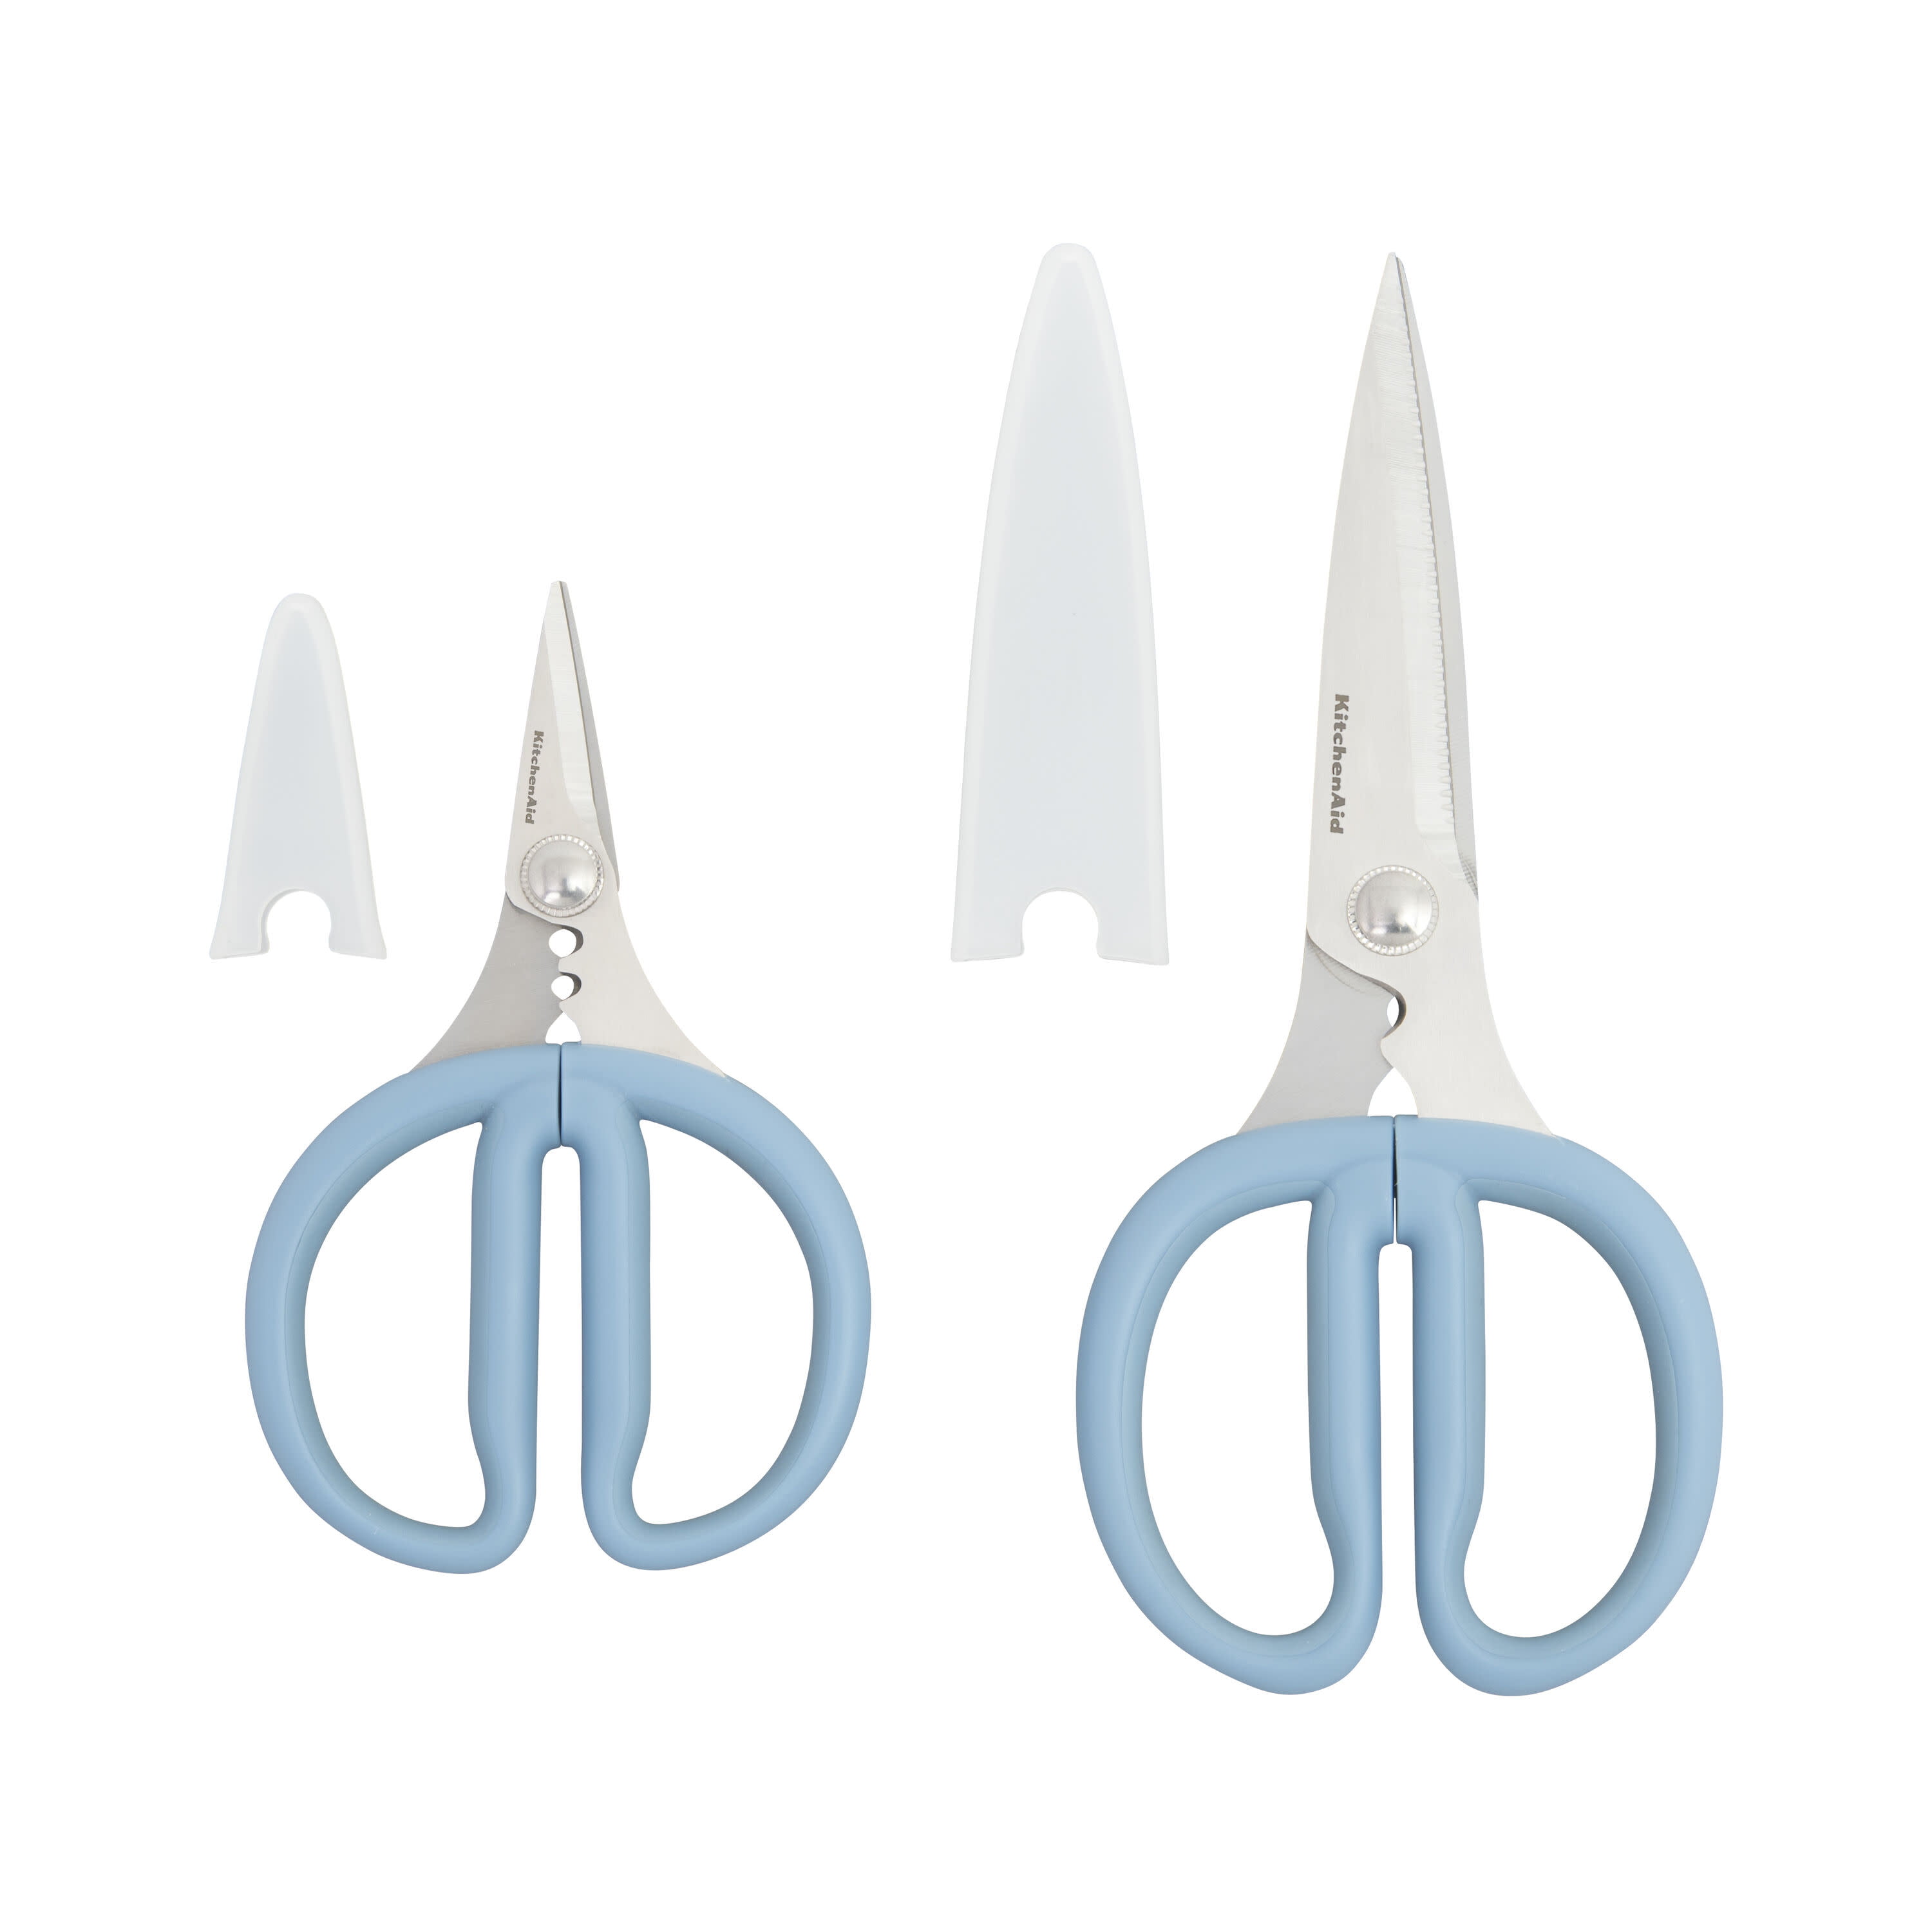 HIKA 24131423682 New KitchenAid Navy Blue Kitchen Shears Scissors Herb Snips 